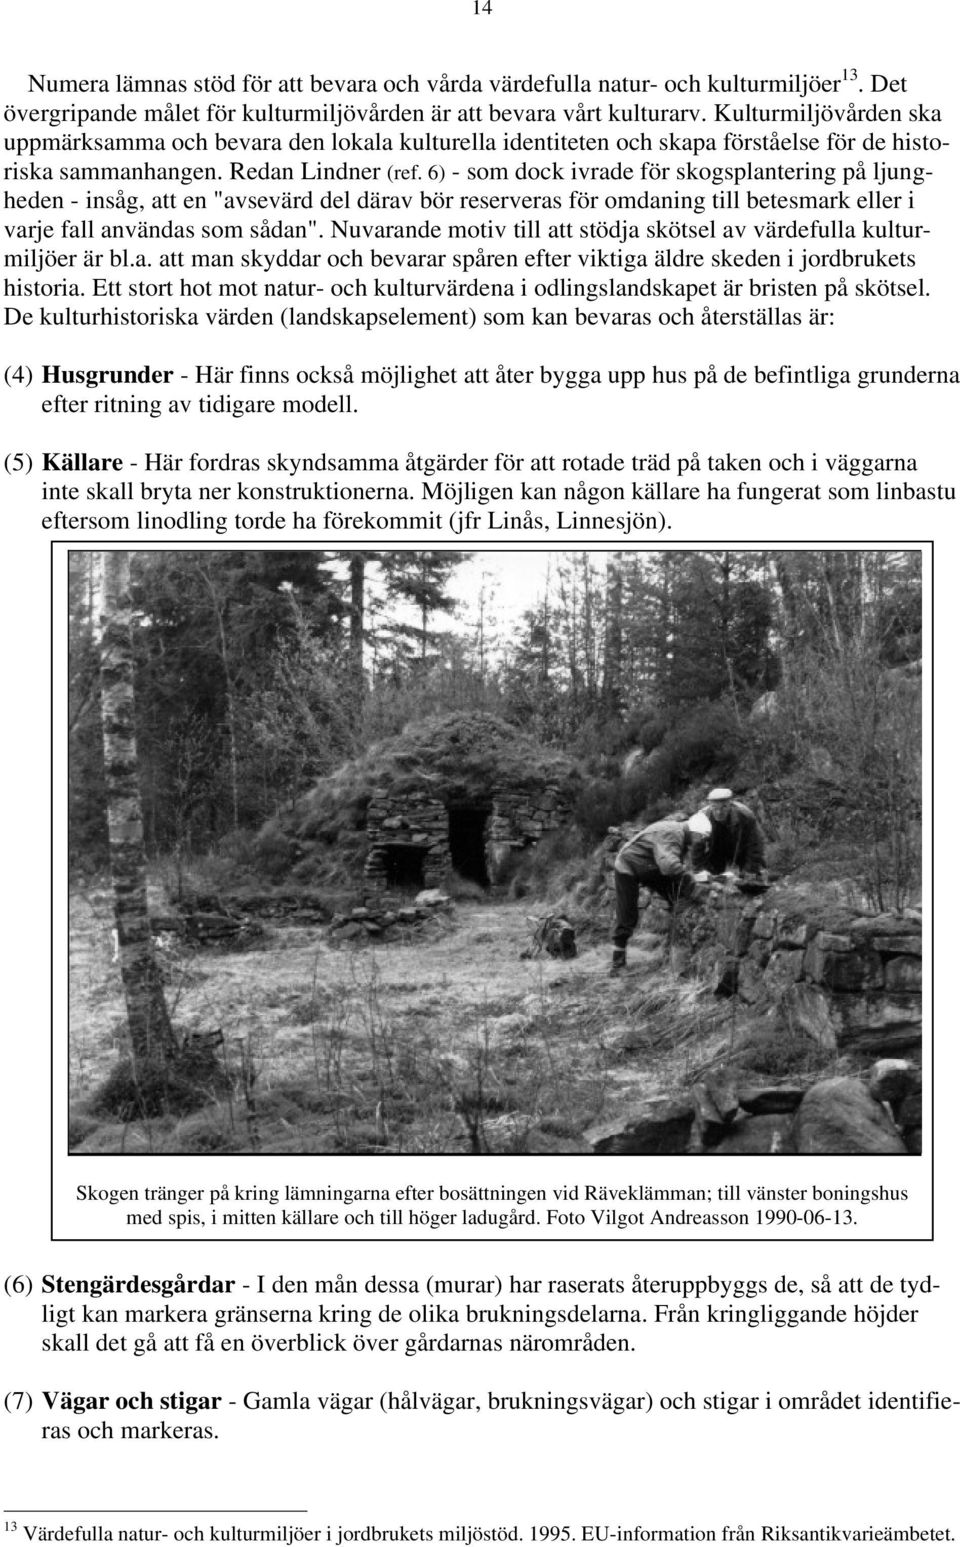 6) - som dock ivrade för skogsplantering på ljungheden - insåg, att en "avsevärd del därav bör reserveras för omdaning till betesmark eller i varje fall användas som sådan".